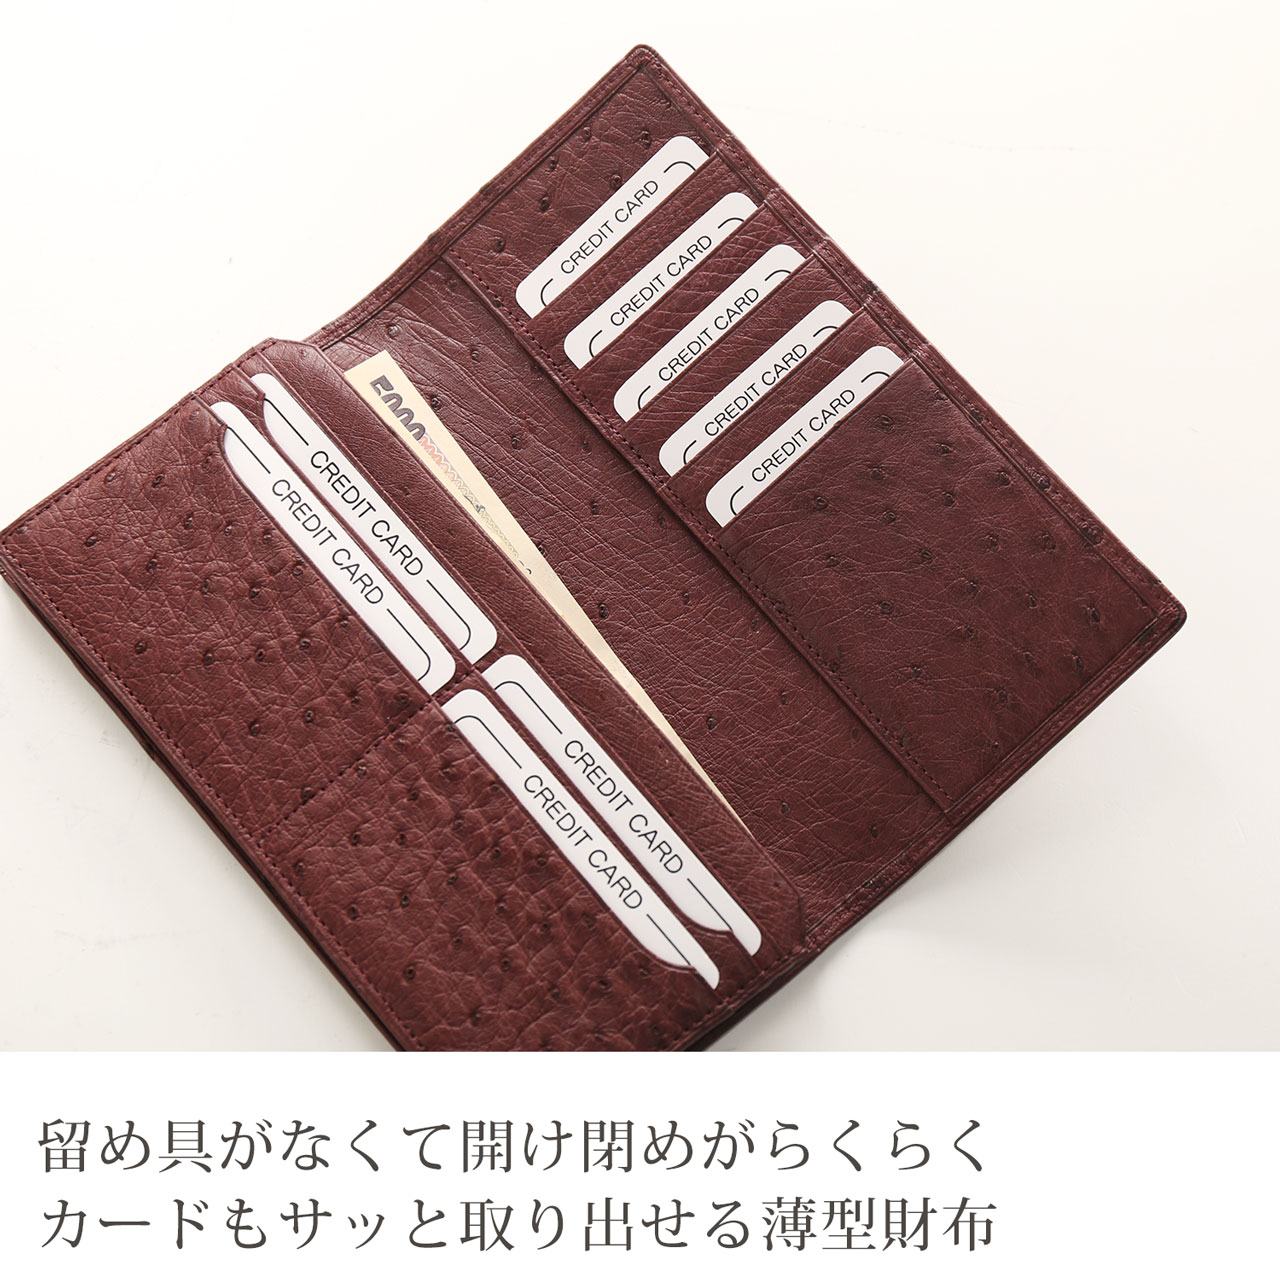 オーストリッチ 長財布 日本製 フルポイント 薄型 軽量 無双 紙幣入れ 束入れ 二つ折り 束入れ 紙幣入れ(9068r)